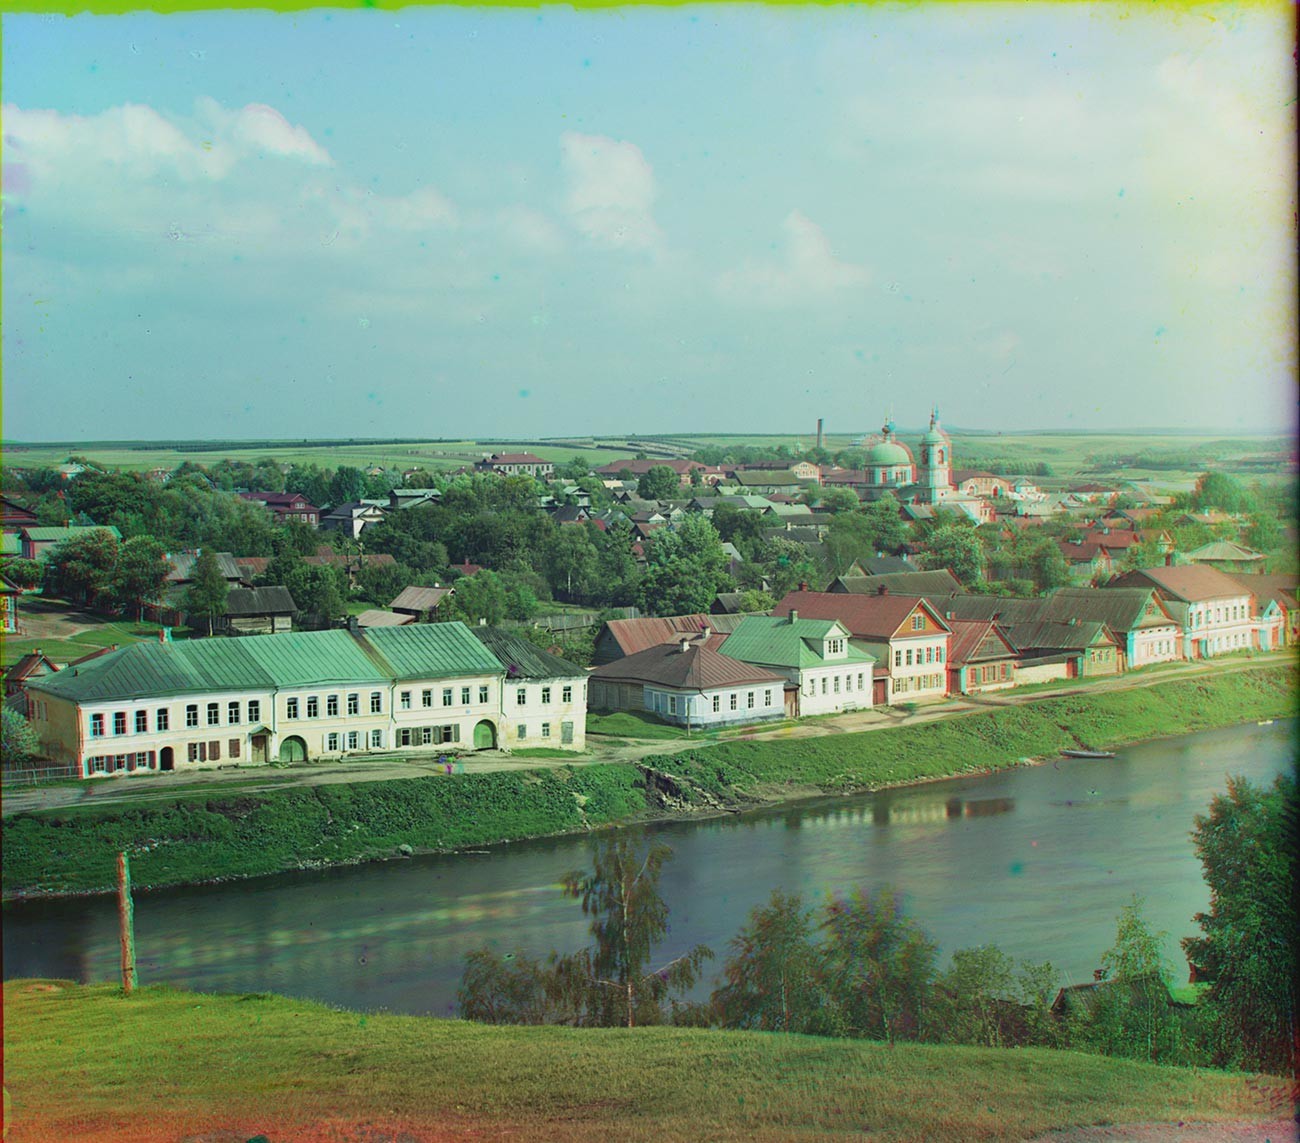 Torzhok. Vista suroeste desde el acantilado que domina el río Tvertsa, cerca del monasterio de los Santos Boris y Gleb. Centro en el horizonte: carretera arbolada de Moscú (ubicación de la finca Znamenskoie-Rayok a la derecha). Verano de 1910.